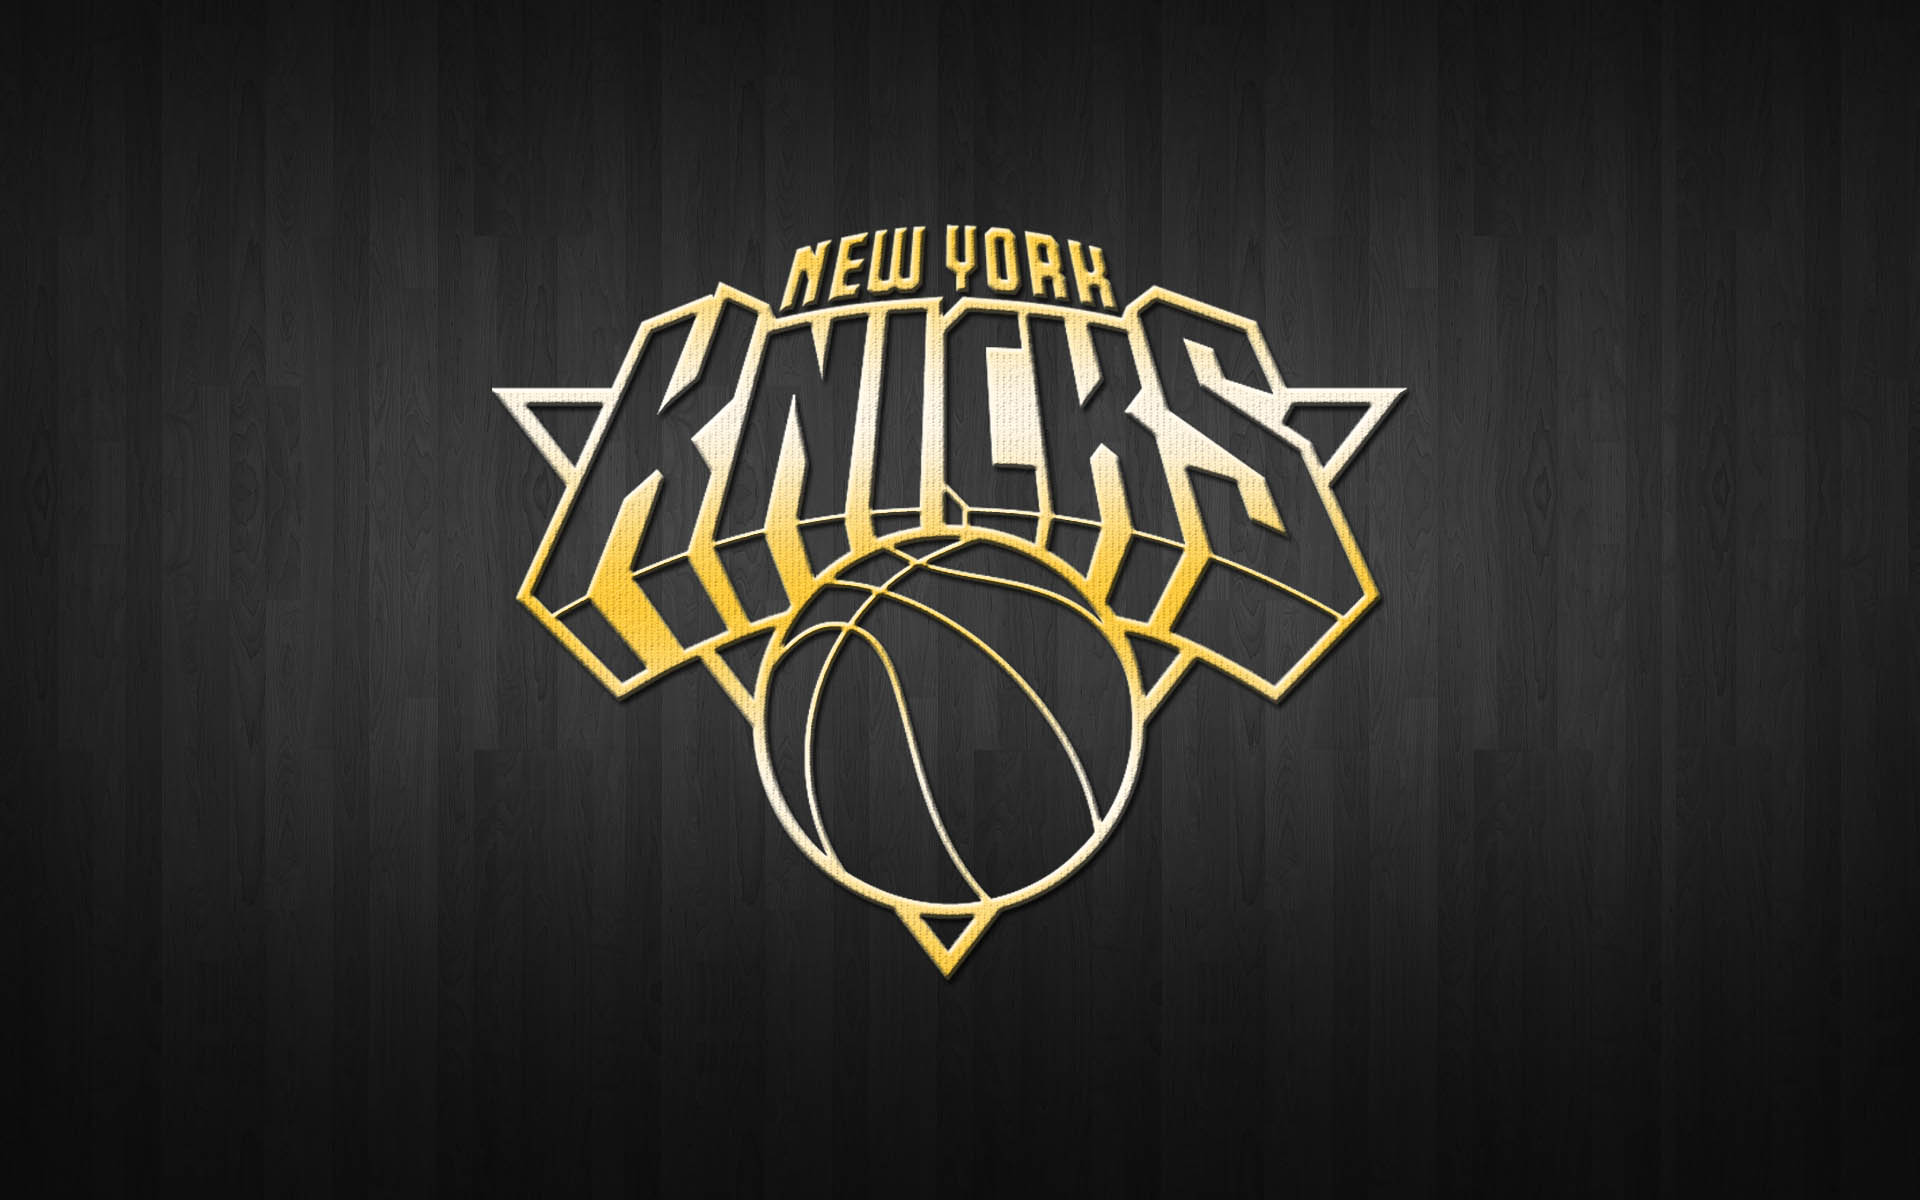 New York Knicks Wallpaper Mobile Festival